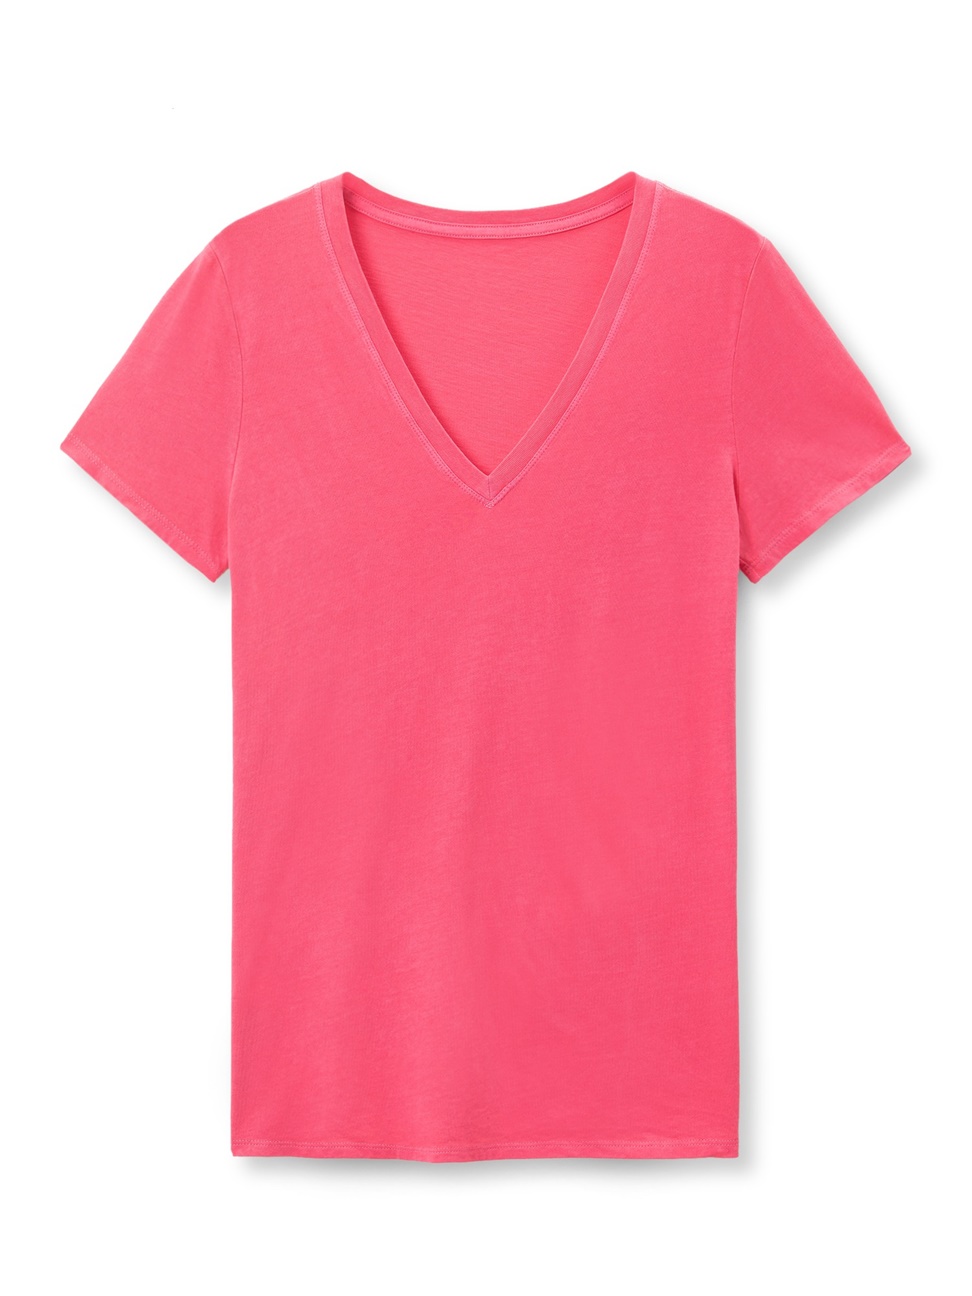 女裝|簡約素色V領短袖T恤-粉珊瑚色